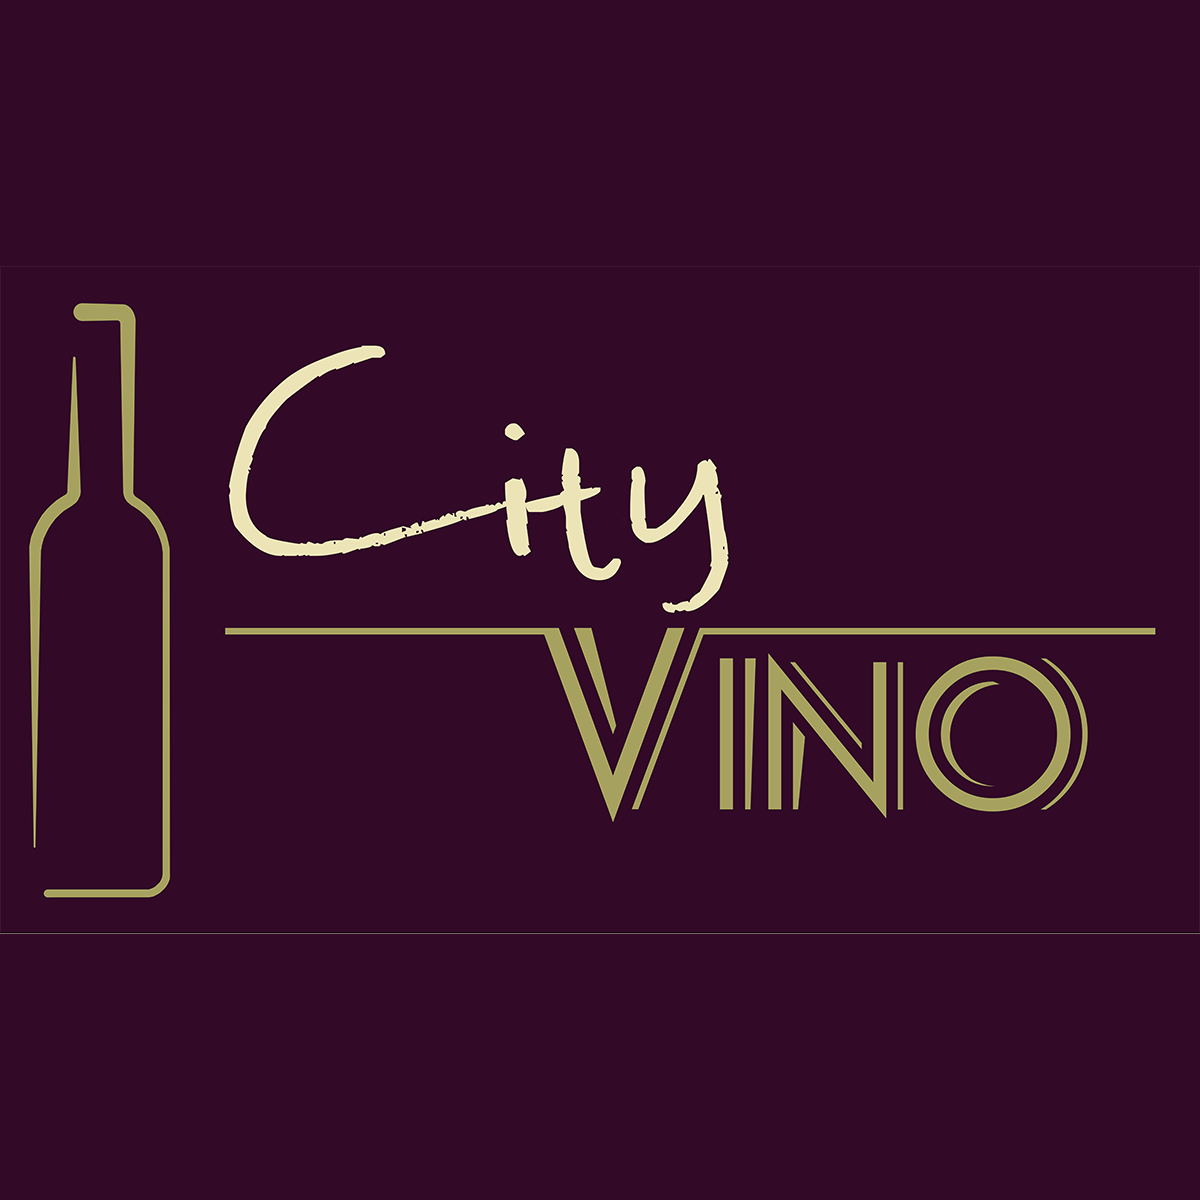 White Wine City - Vino